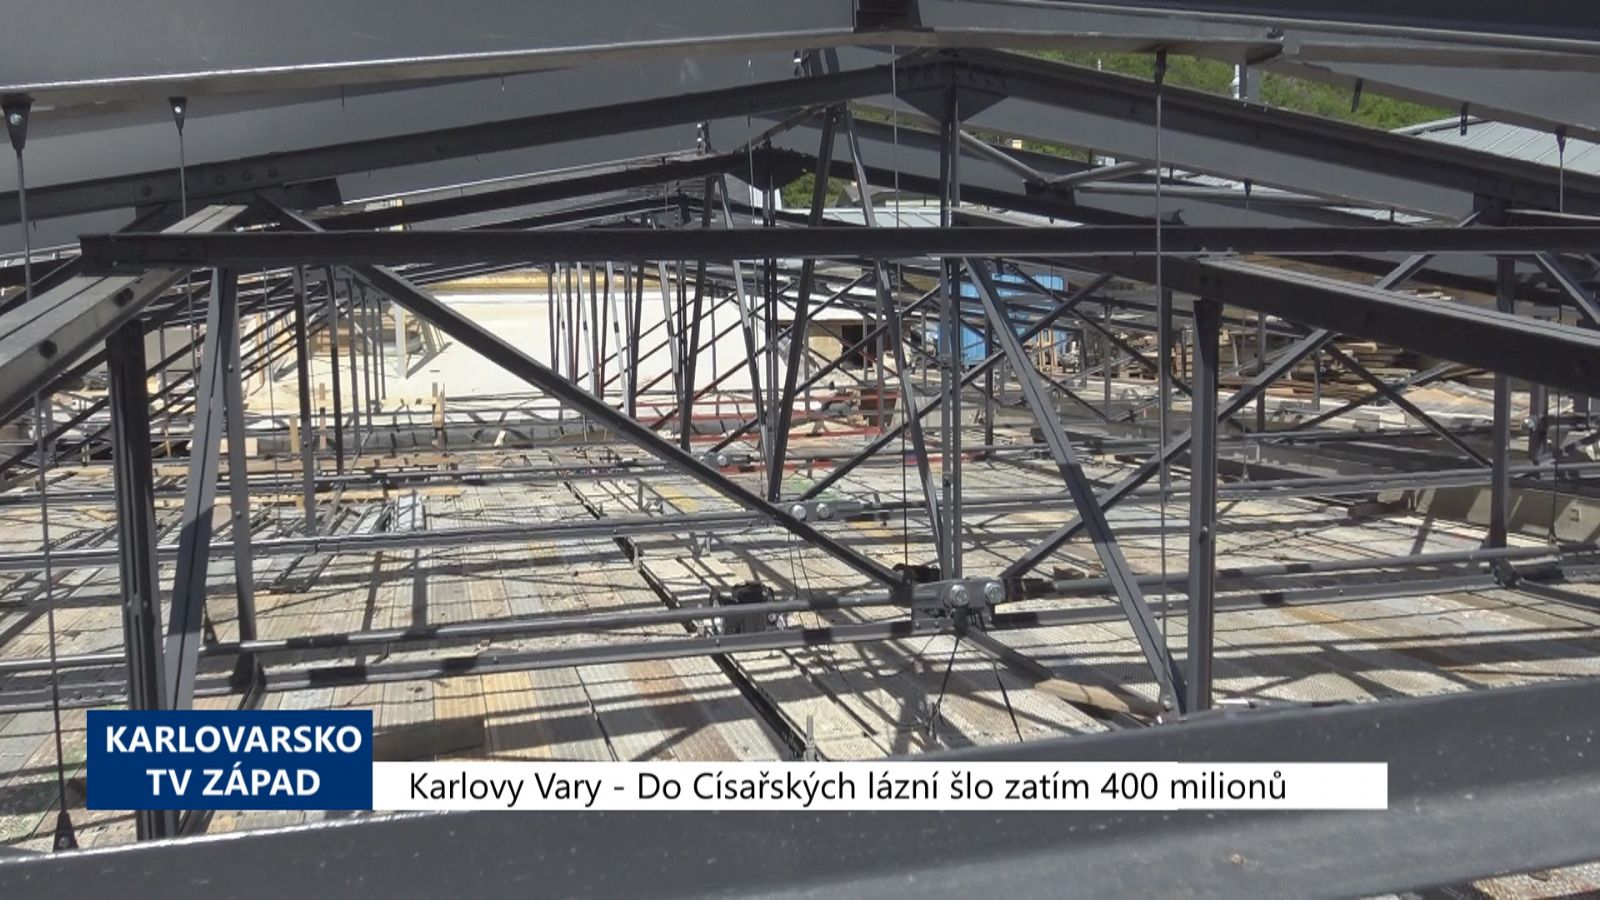 Karlovy Vary: Do Císařských lázní šlo zatím 400 milionů (TV Západ)